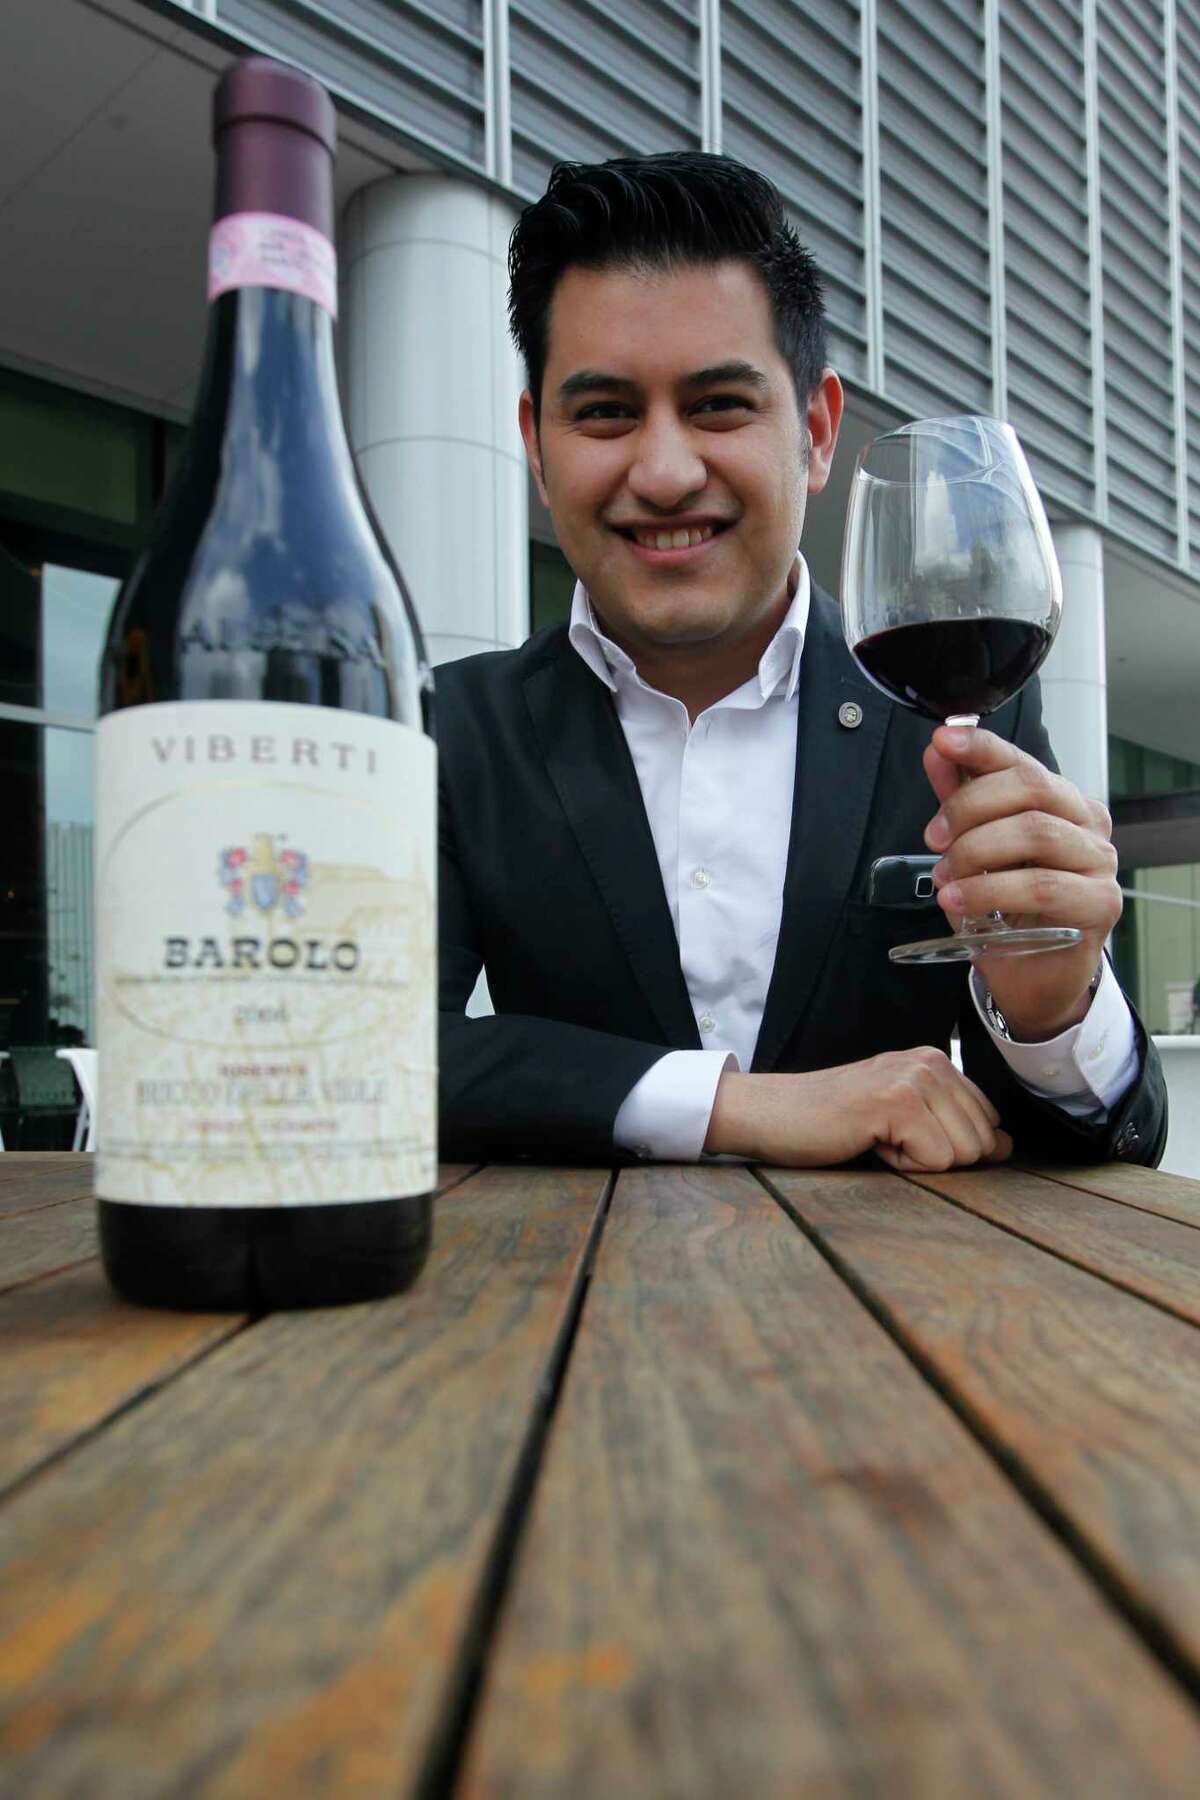 Caracol sommelier Andres Blanco touts his favorite wine, the 2006 Viberti Giovanni Bricco delle Viole Riserva Barolo.